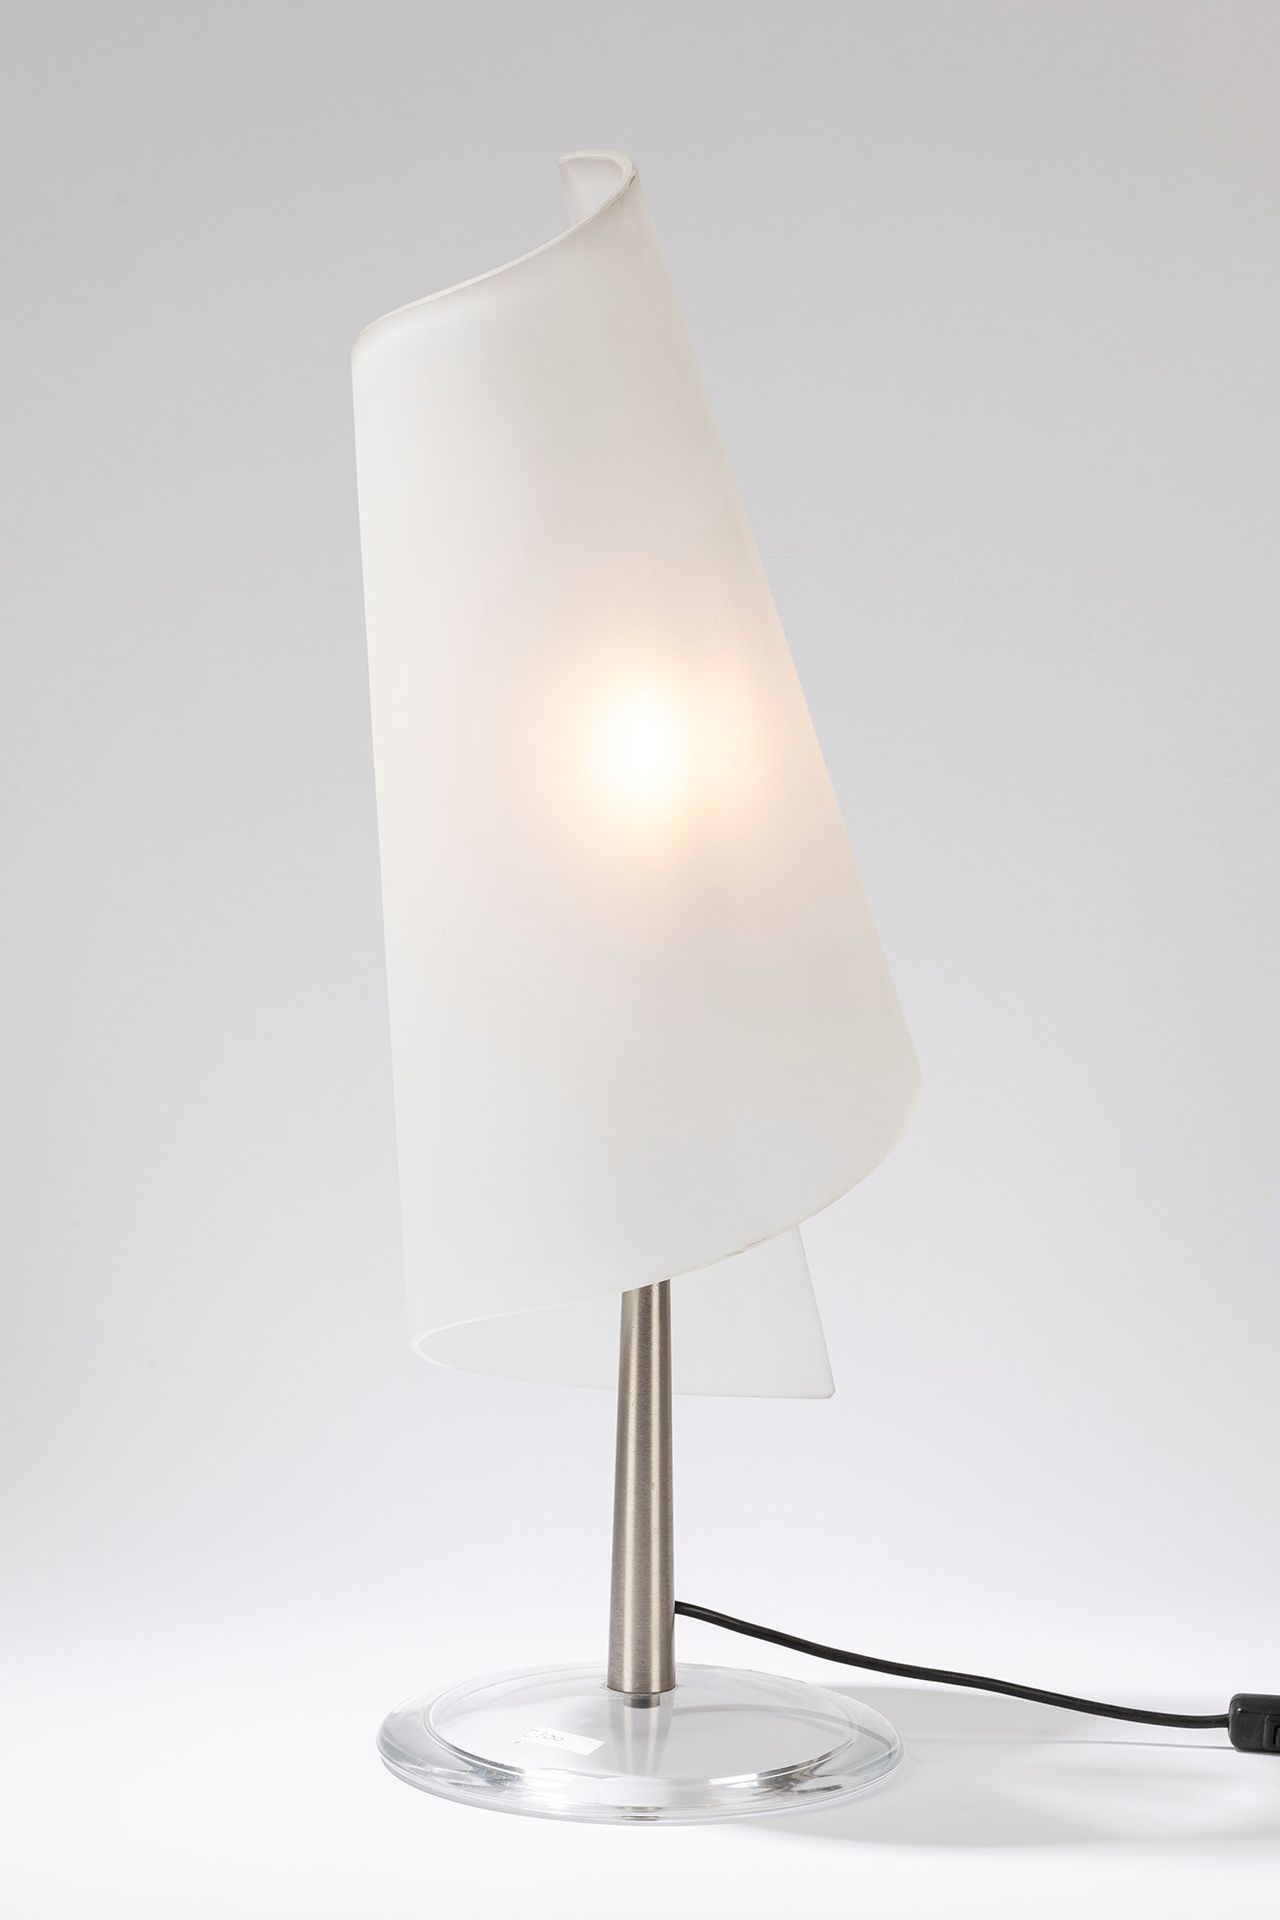 ITALIAN MANUFACTURE Lámpara de sobremesa, época de los 70

cm h 70 x 23
con base&hellip;